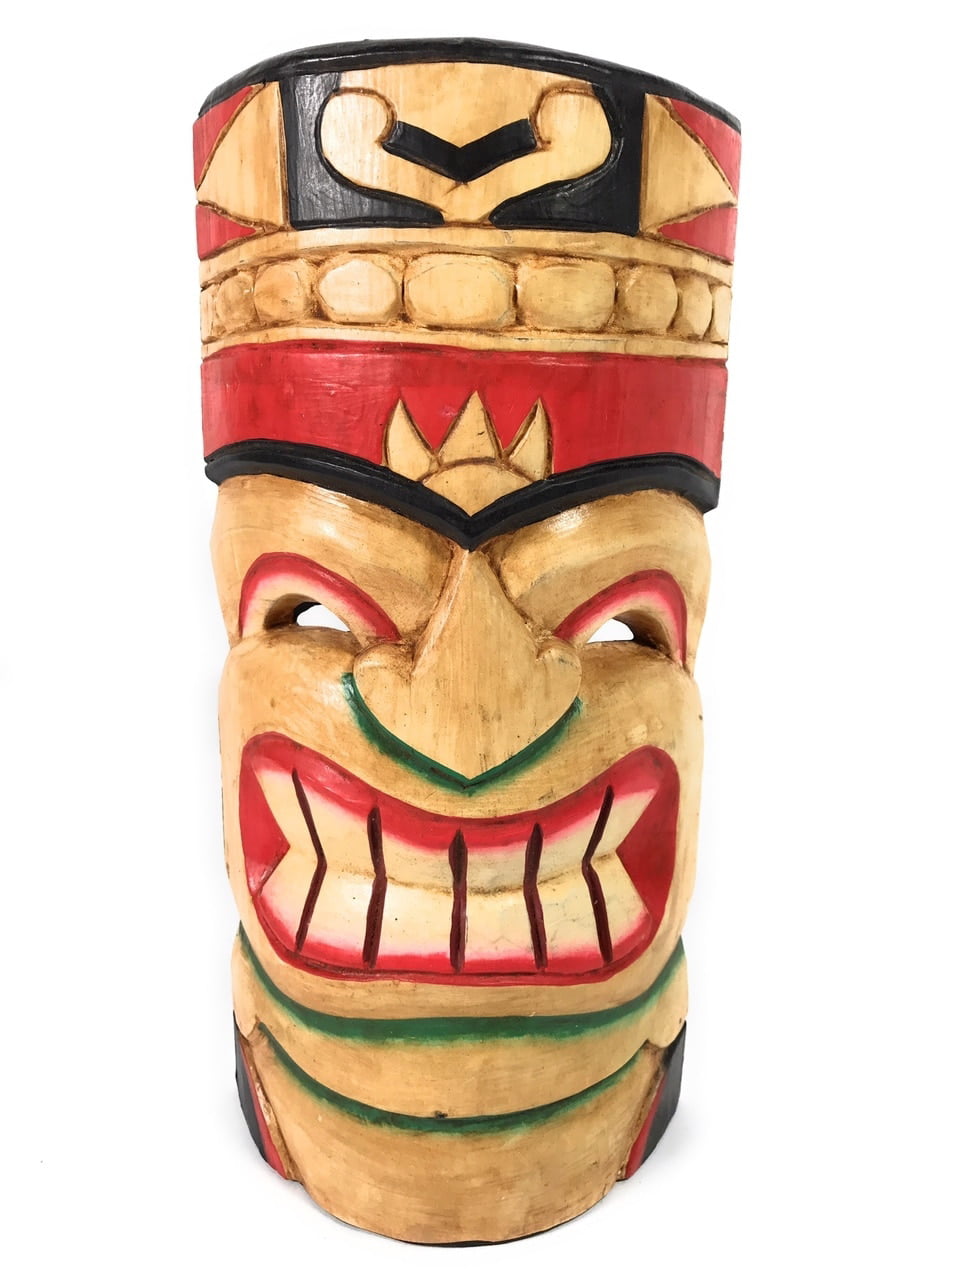 Smiley Tiki Mask 12" Happy Tiki Idol#dpt514430 